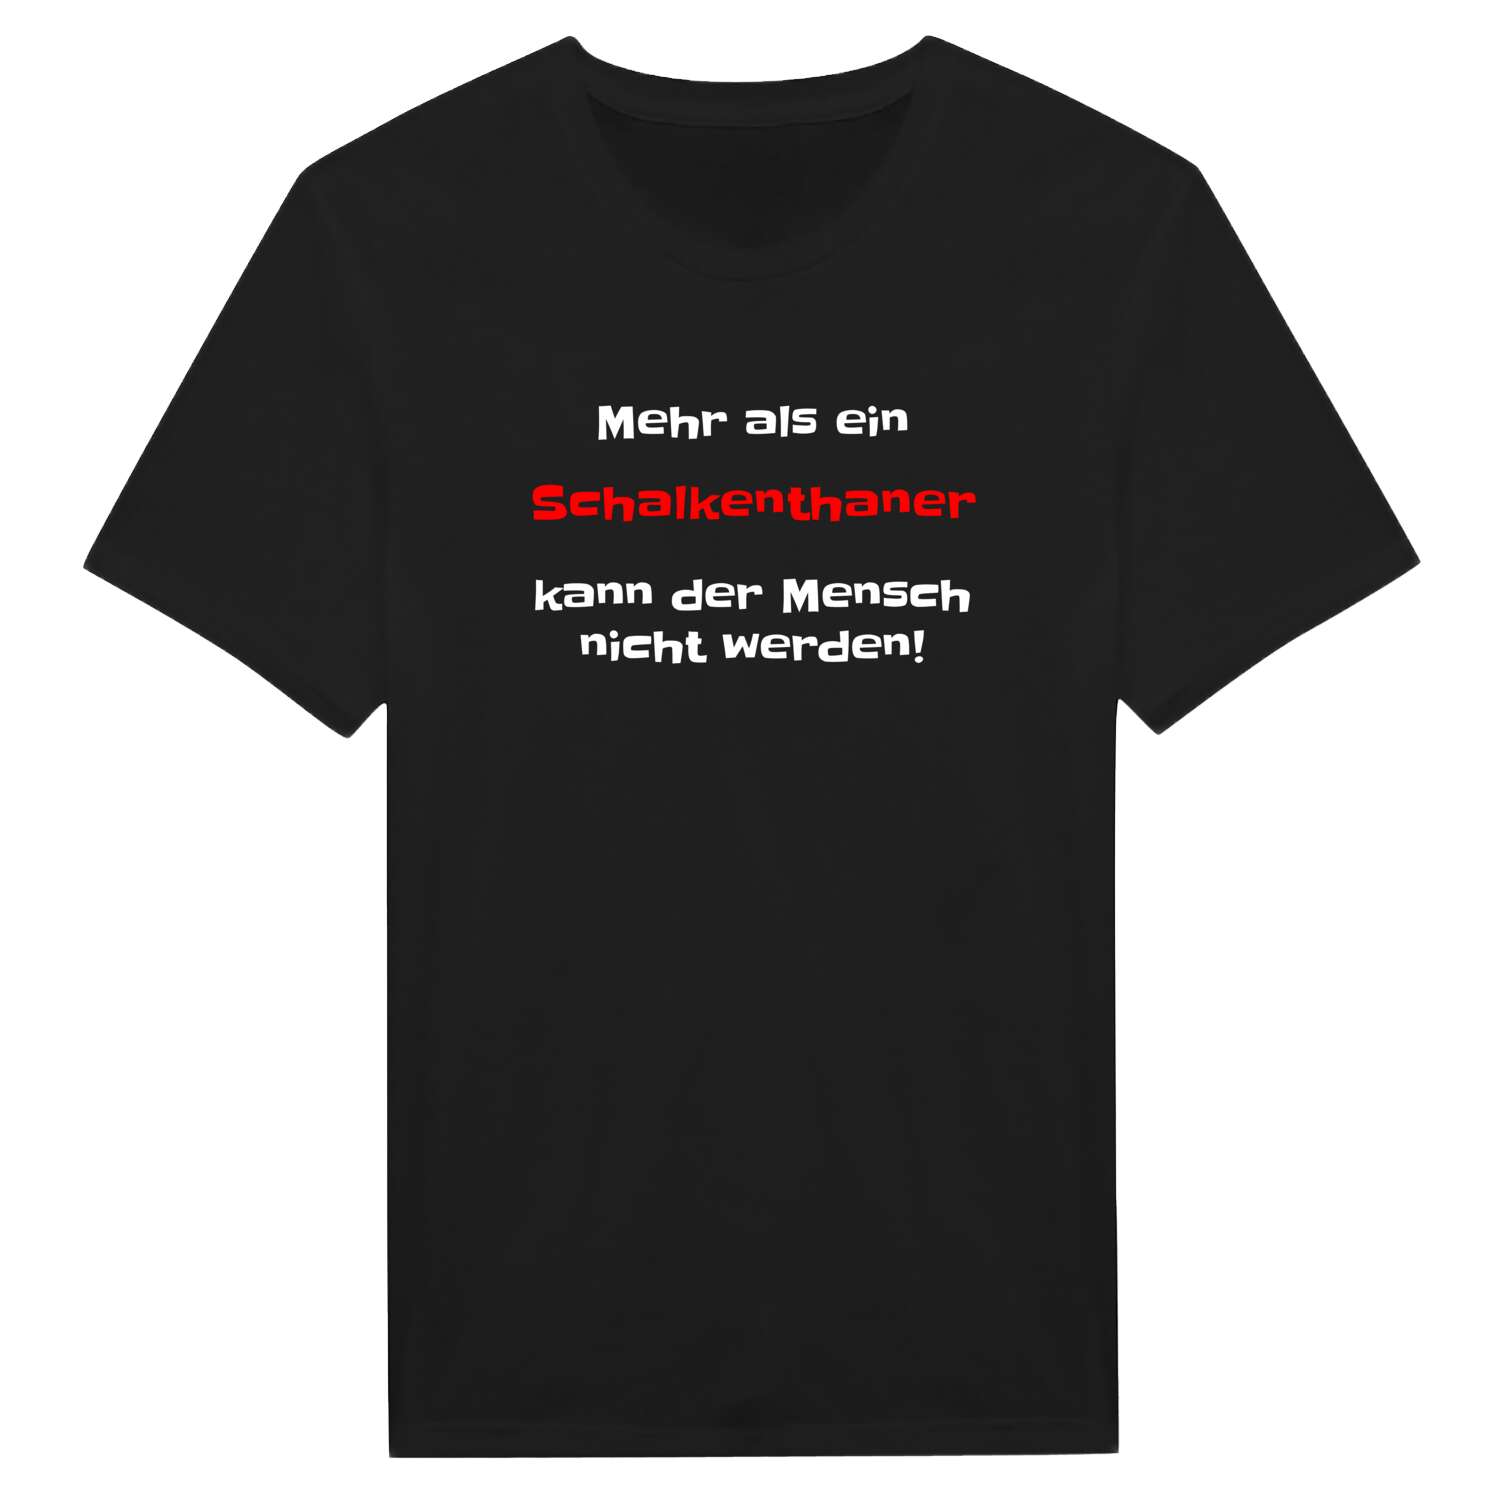 Schalkenthan T-Shirt »Mehr als ein«